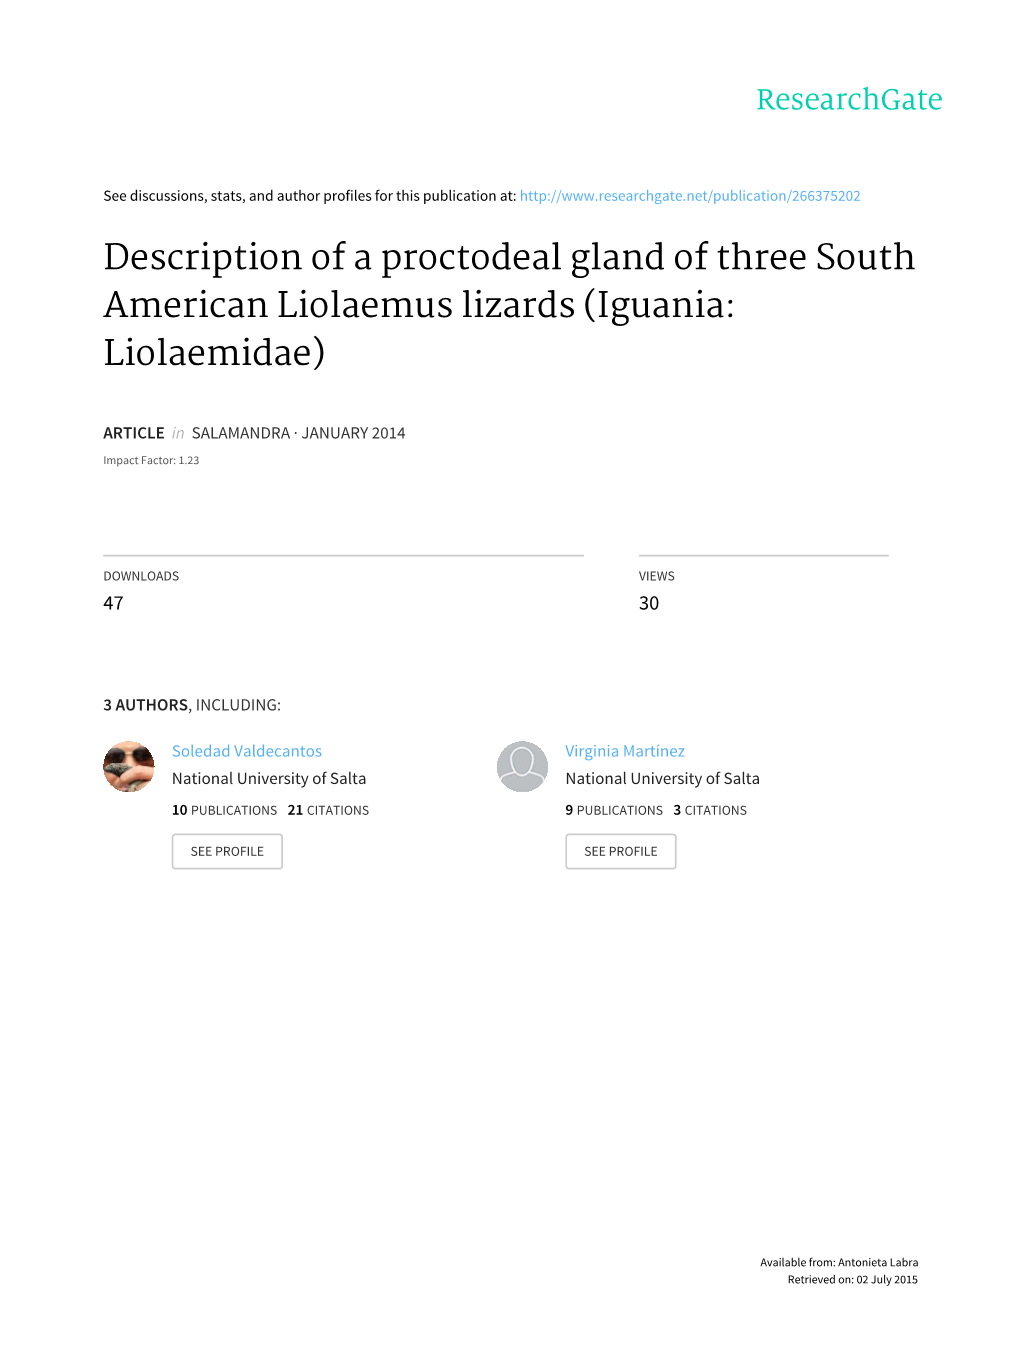 Description of a Proctodeal Gland of Three South American Liolaemus Lizards (Iguania: Liolaemidae)